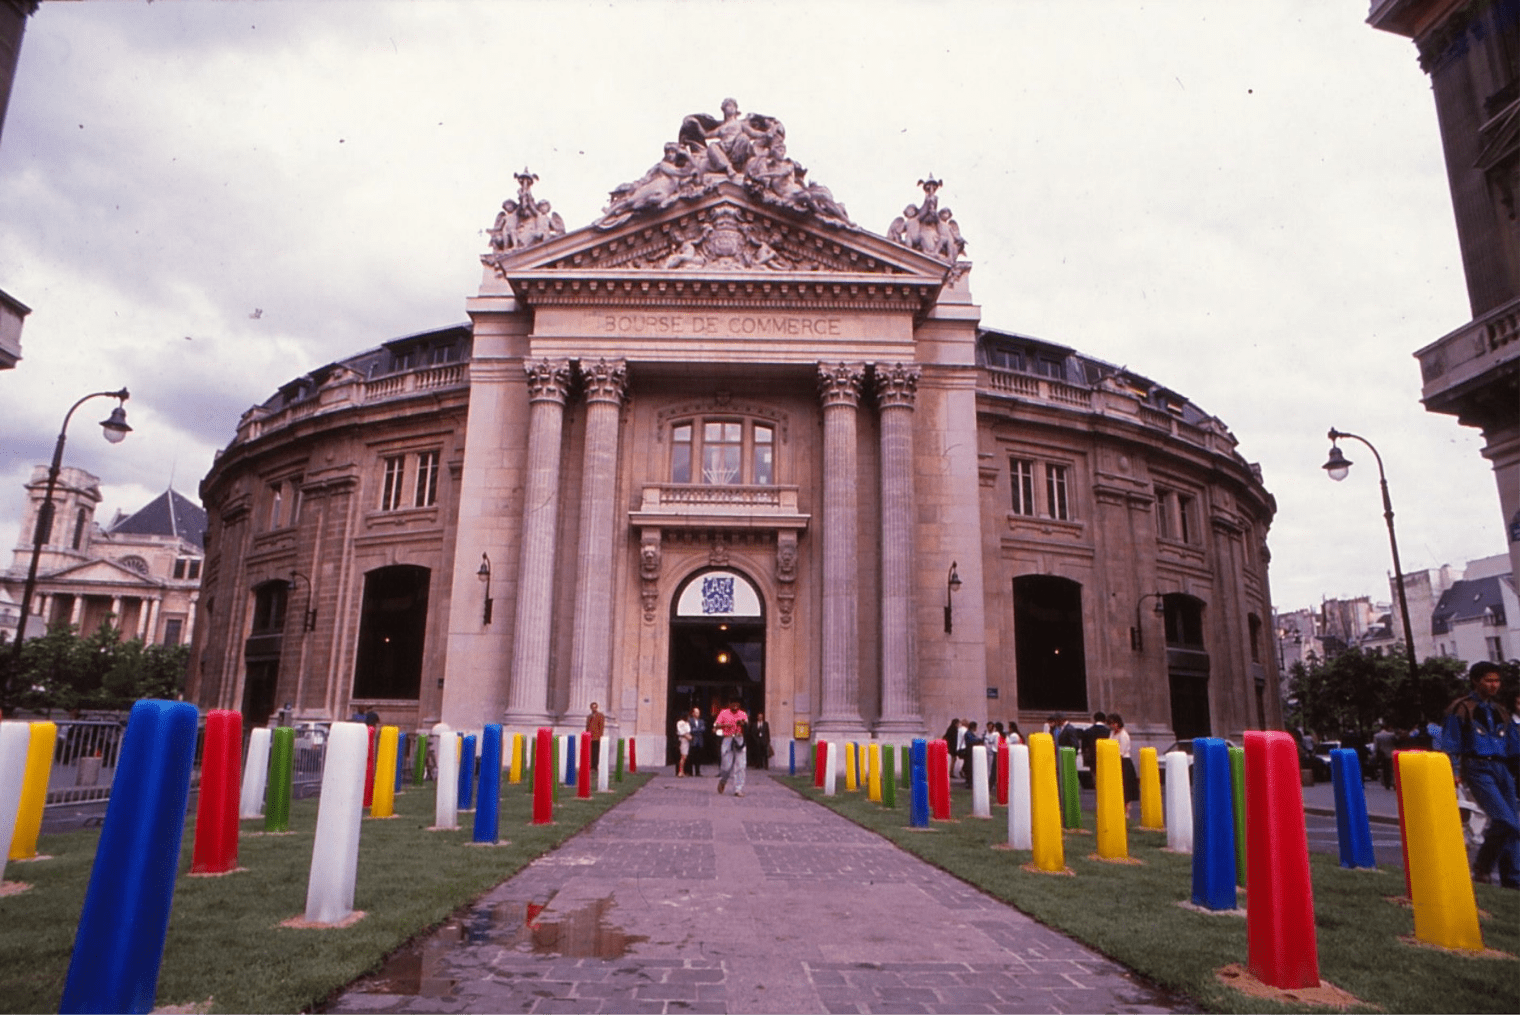 EXPOSITION L’ART DÉCODÉ, BOURSE DE COMMERCE DE PARIS, 1990 : PAINS DE GLACE, BERNARD TURIN